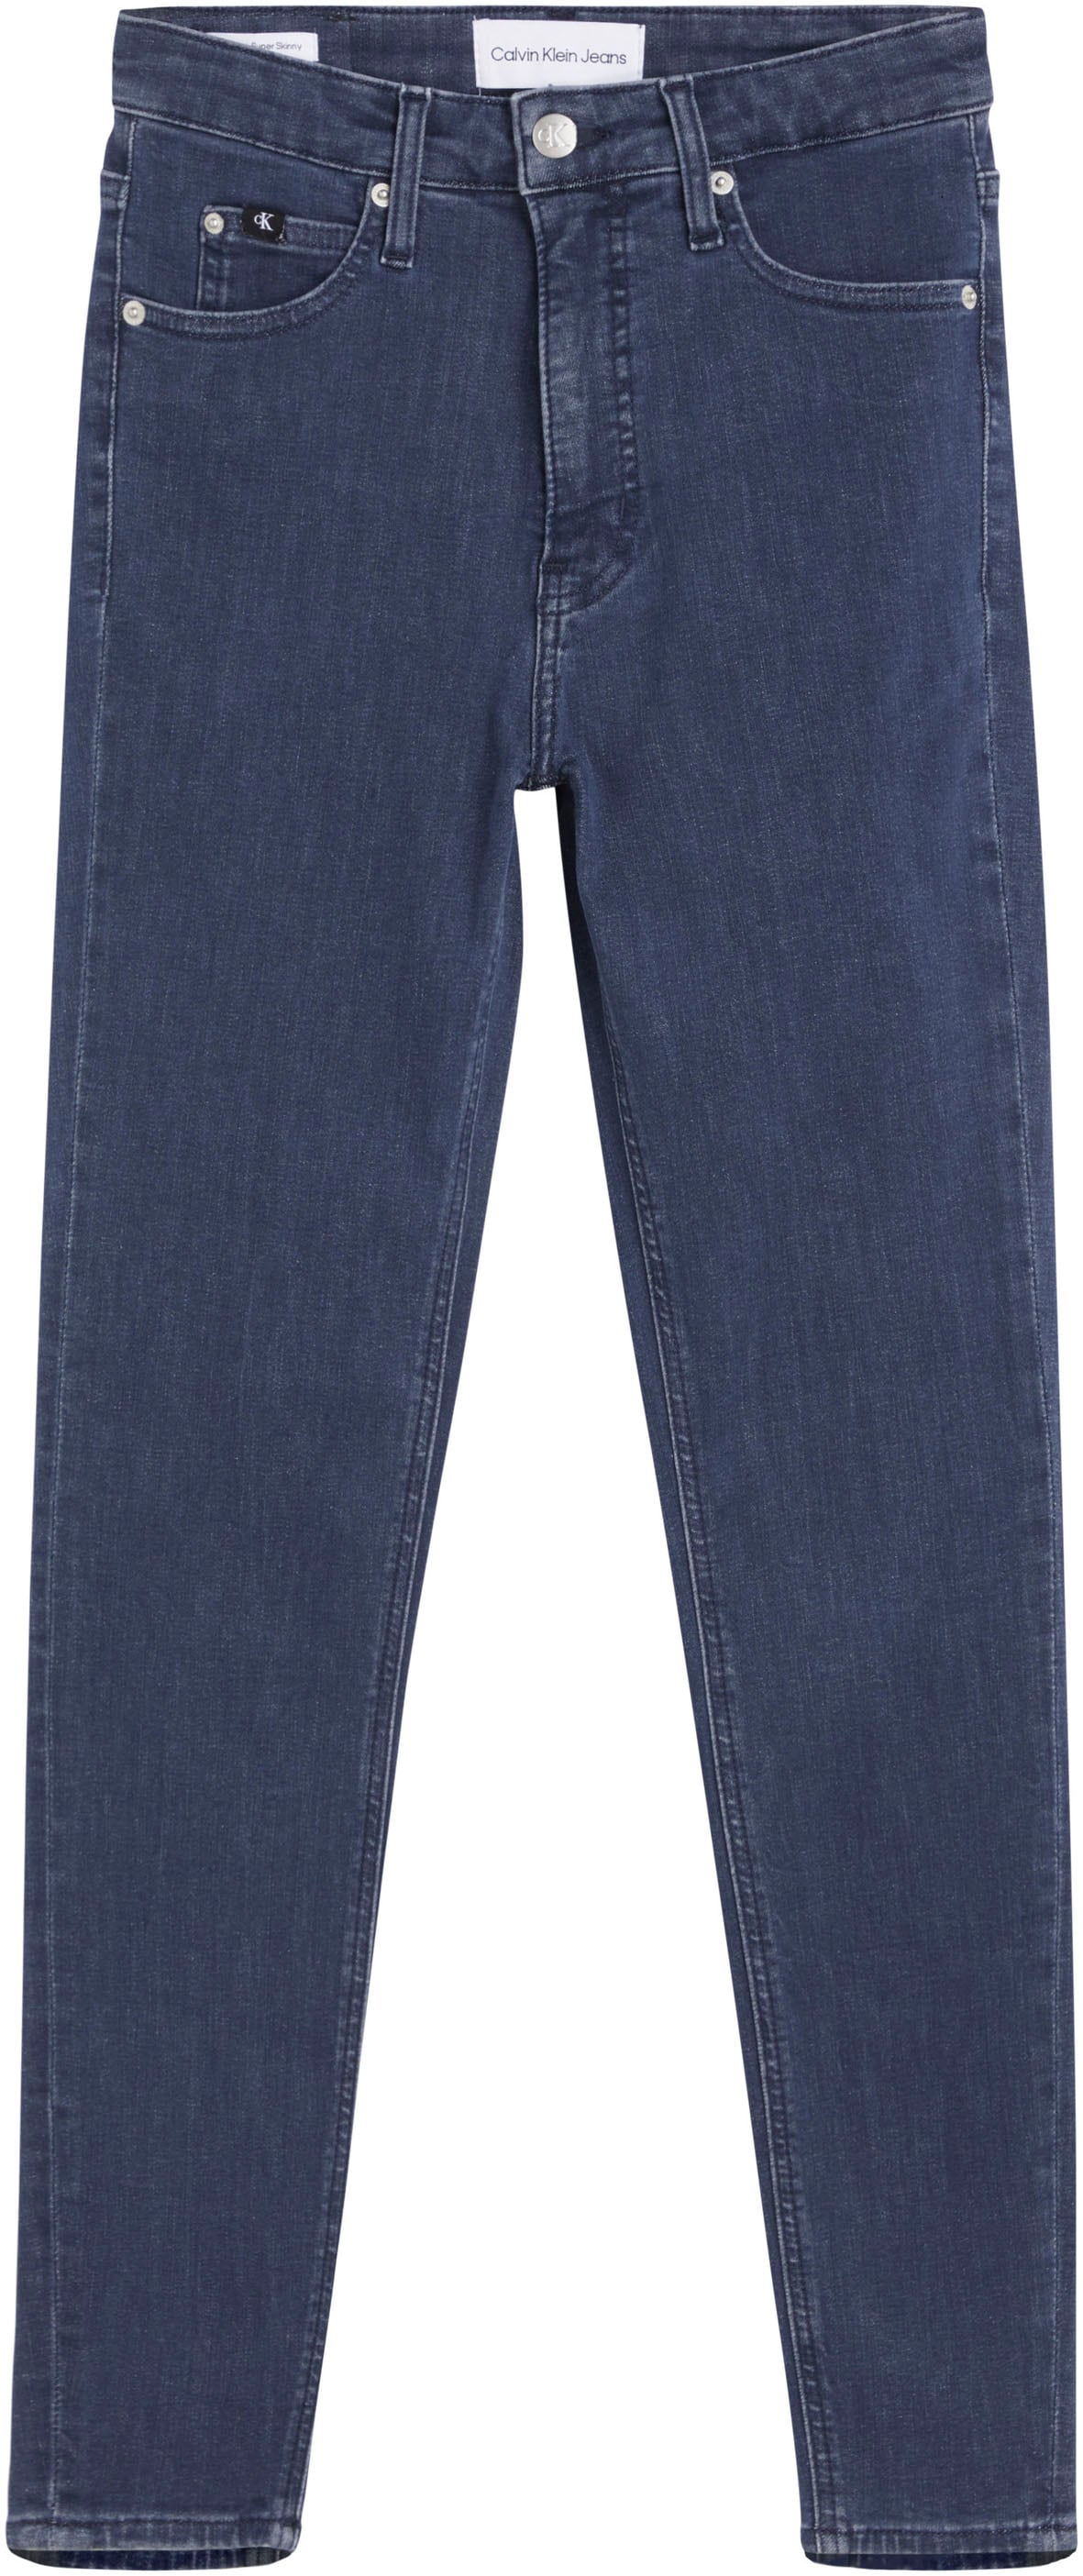 ♕ Calvin Klein Jeans versandkostenfrei bestellen mit SKINNY hohem Bund ANKLE«, RISE SUPER »HIGH Ankle-Jeans